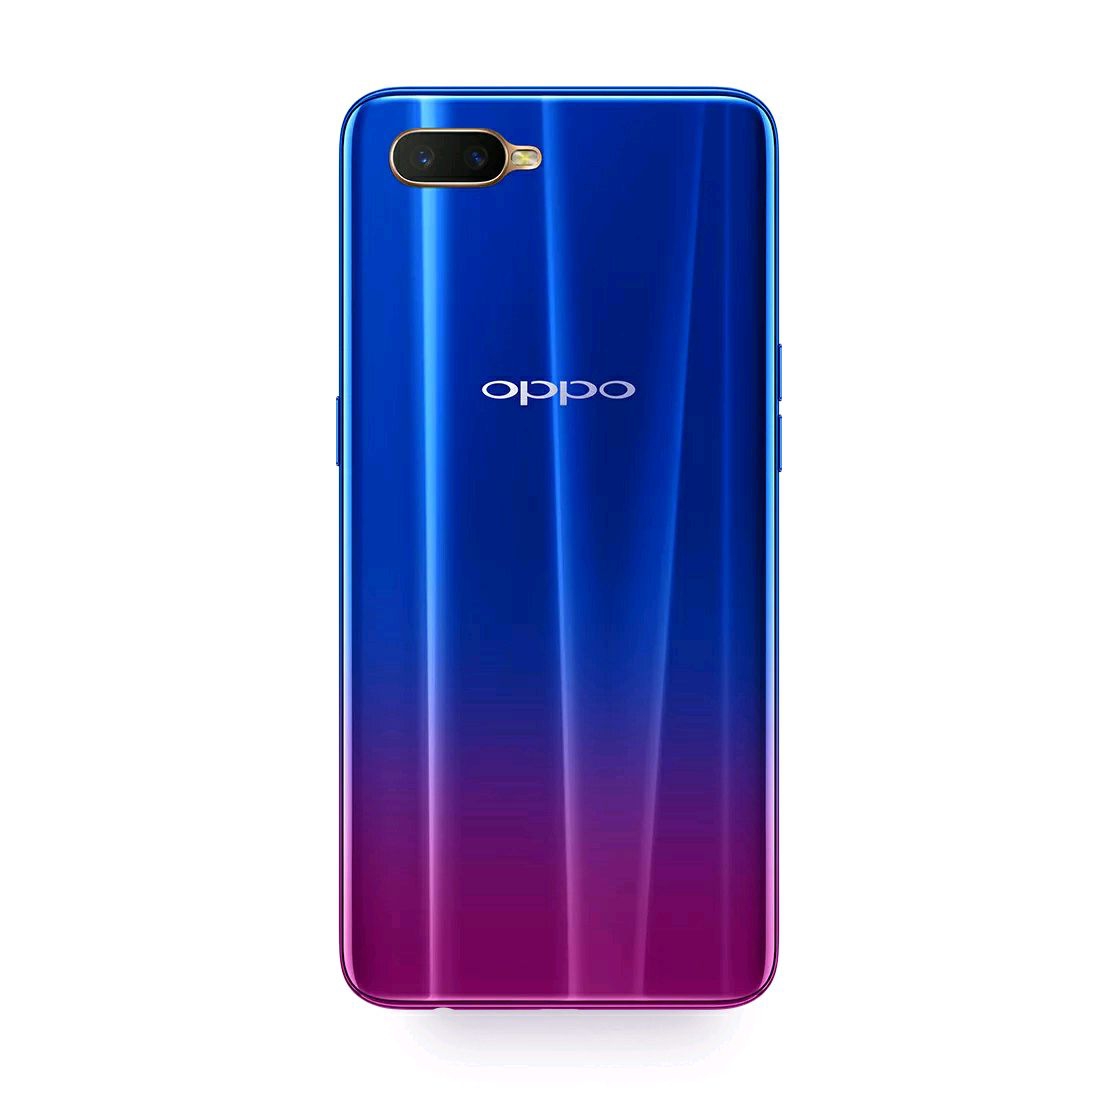 最便宜的屏下指纹手机OPPO K1发布